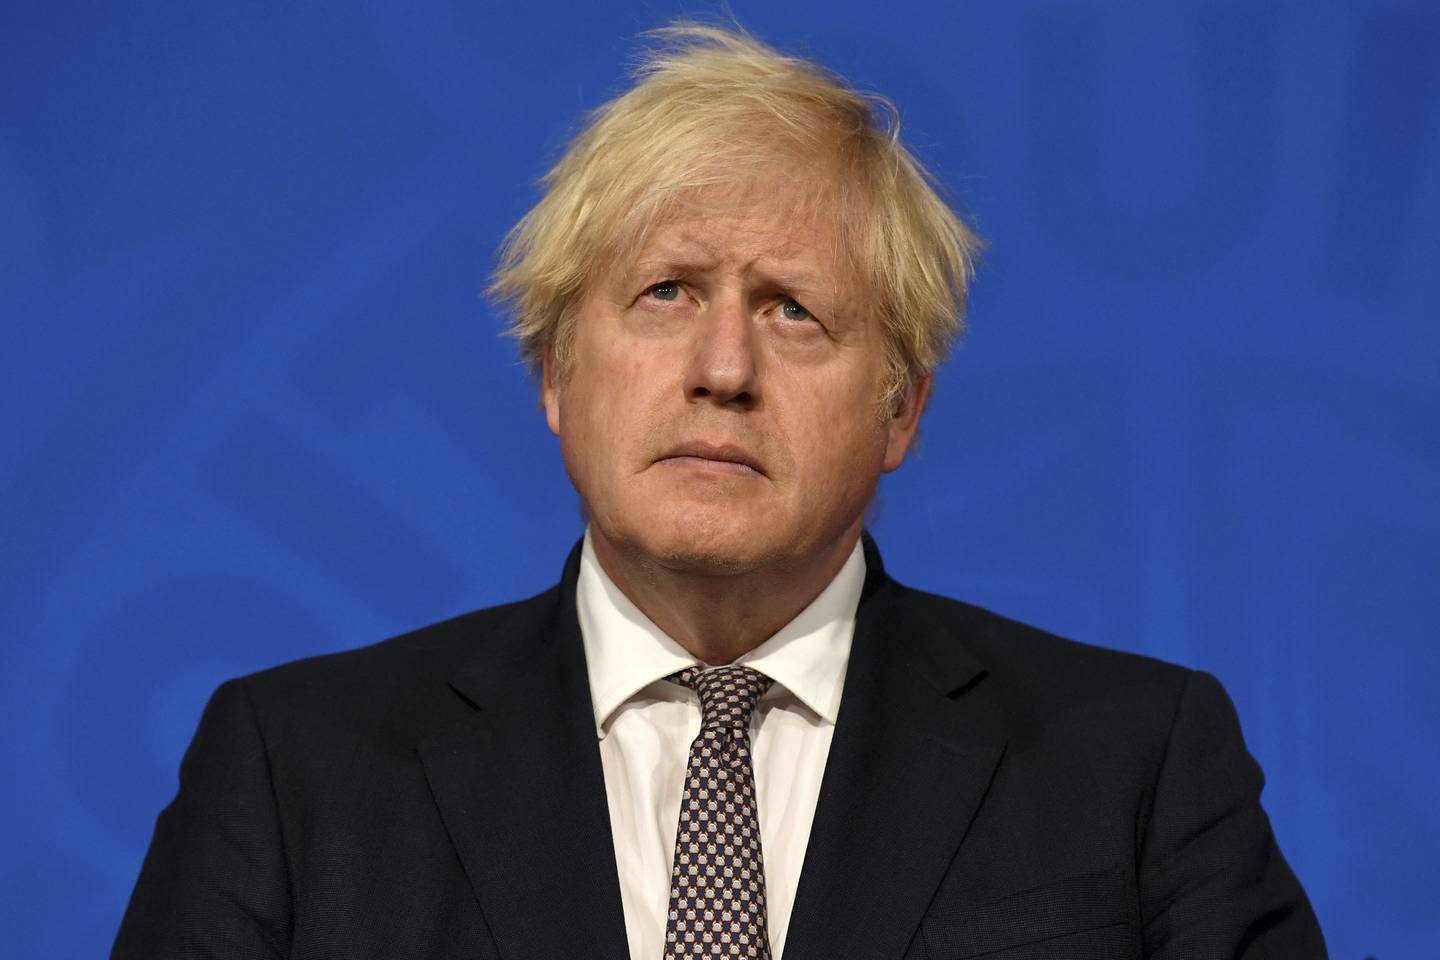 Boris Johnsons planer om å gjennomføre det siste trinnet i gjenåpningen tross økende smitte blir ikke godt tatt imot hos opposisjonen eller i den britiske legeforeningen. Foto: Daniel Leal-Olivas / AP / NTB